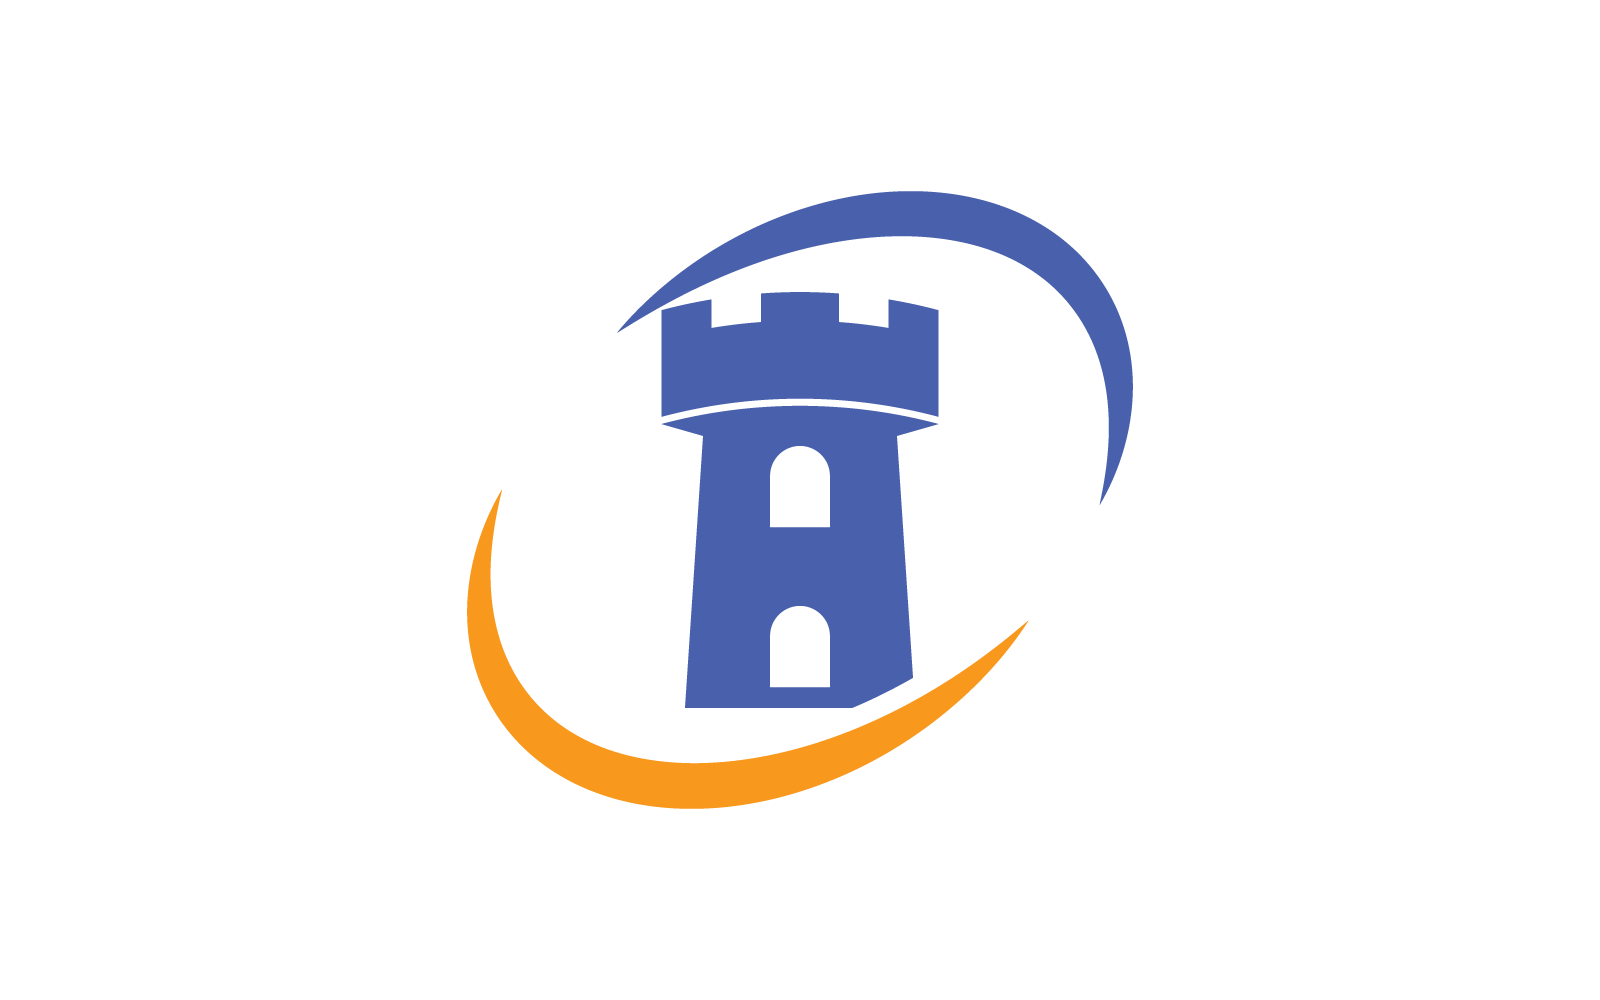 Zamek logo ikona ilustracja wektor Płaska konstrukcja szablonu